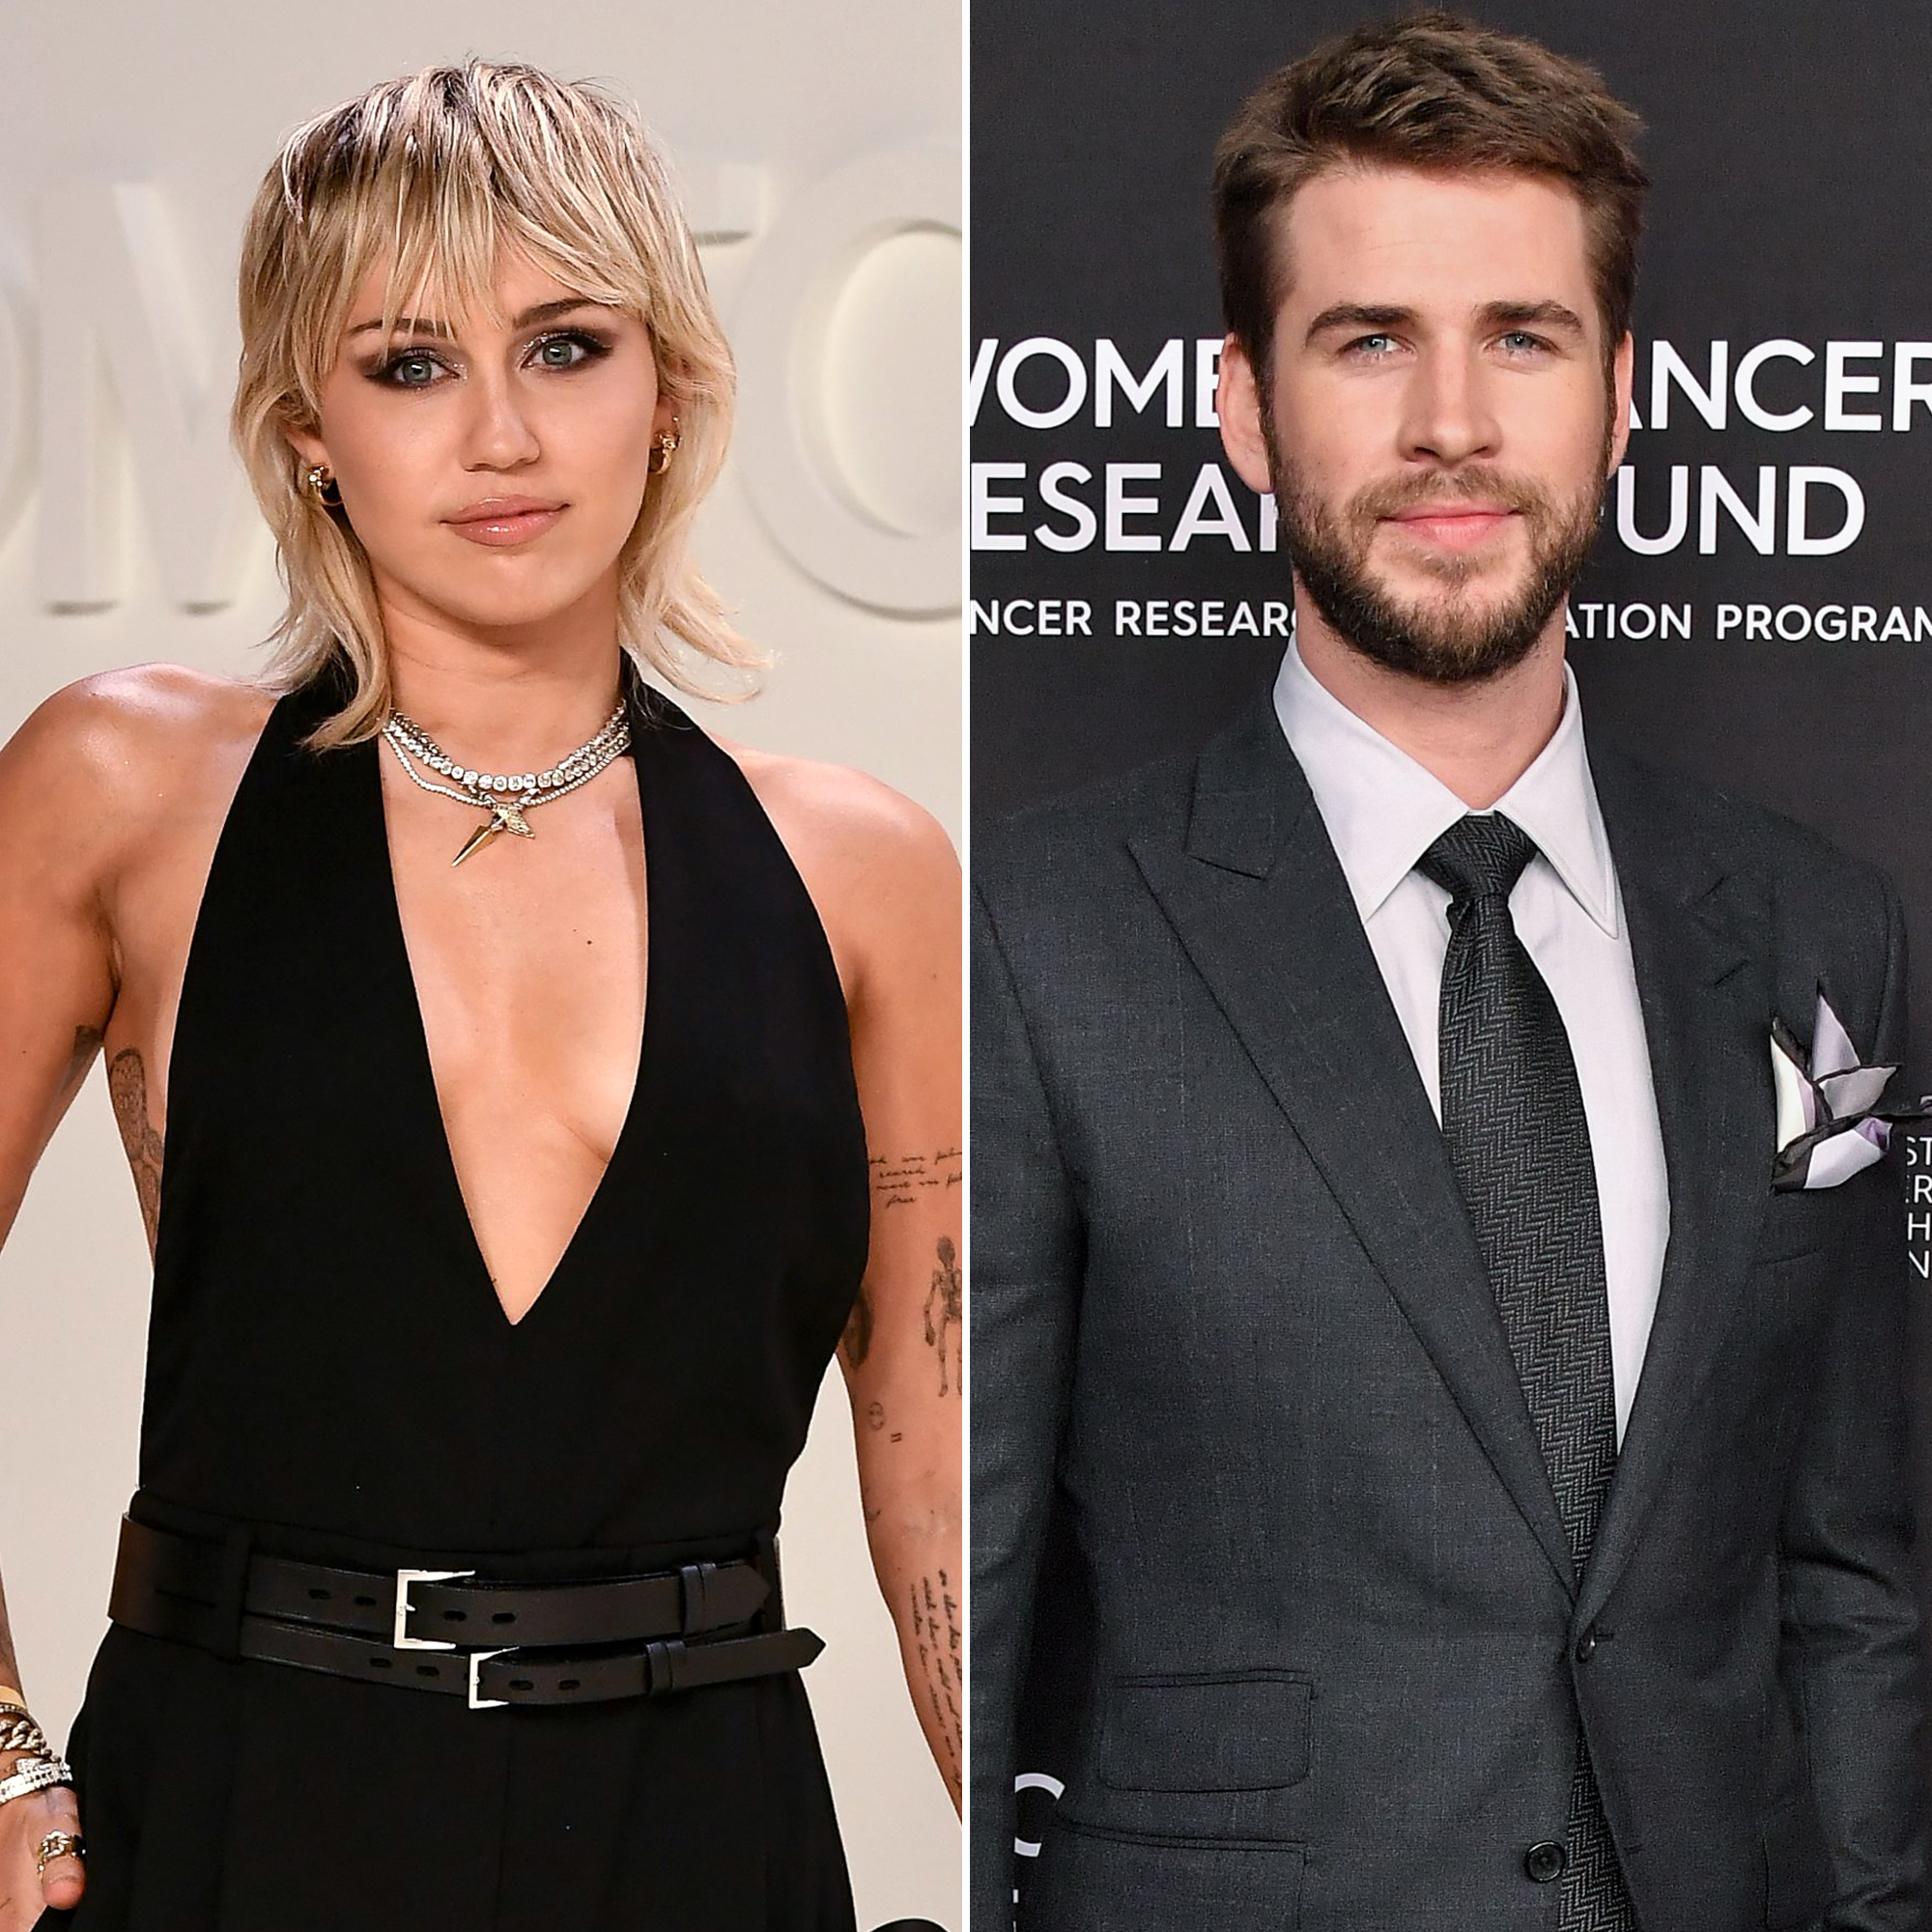 Miley Cyrus Reflects on Writing 'Malibu' About Liam Hemsworth